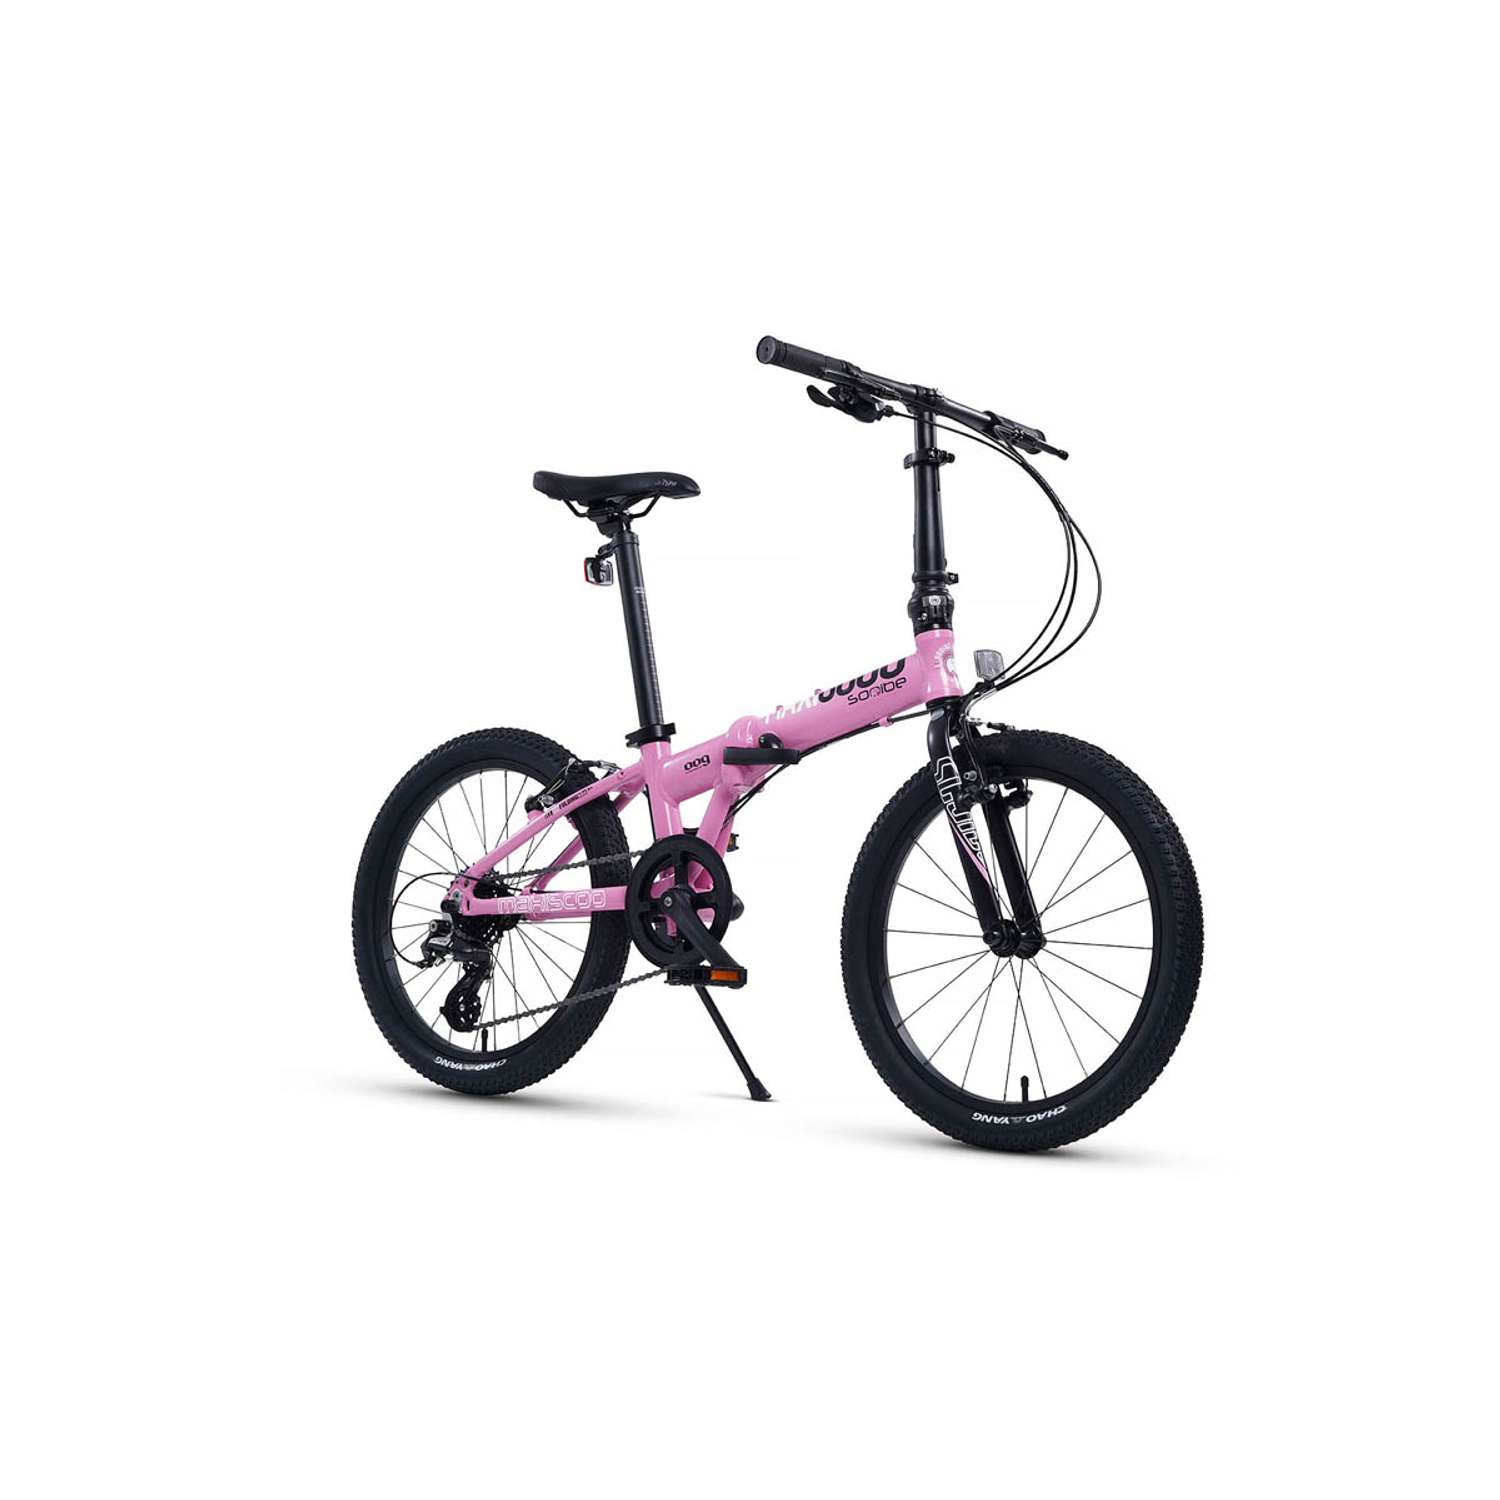 Велосипед Детский Складной Maxiscoo S009 20 розовый - фото 2